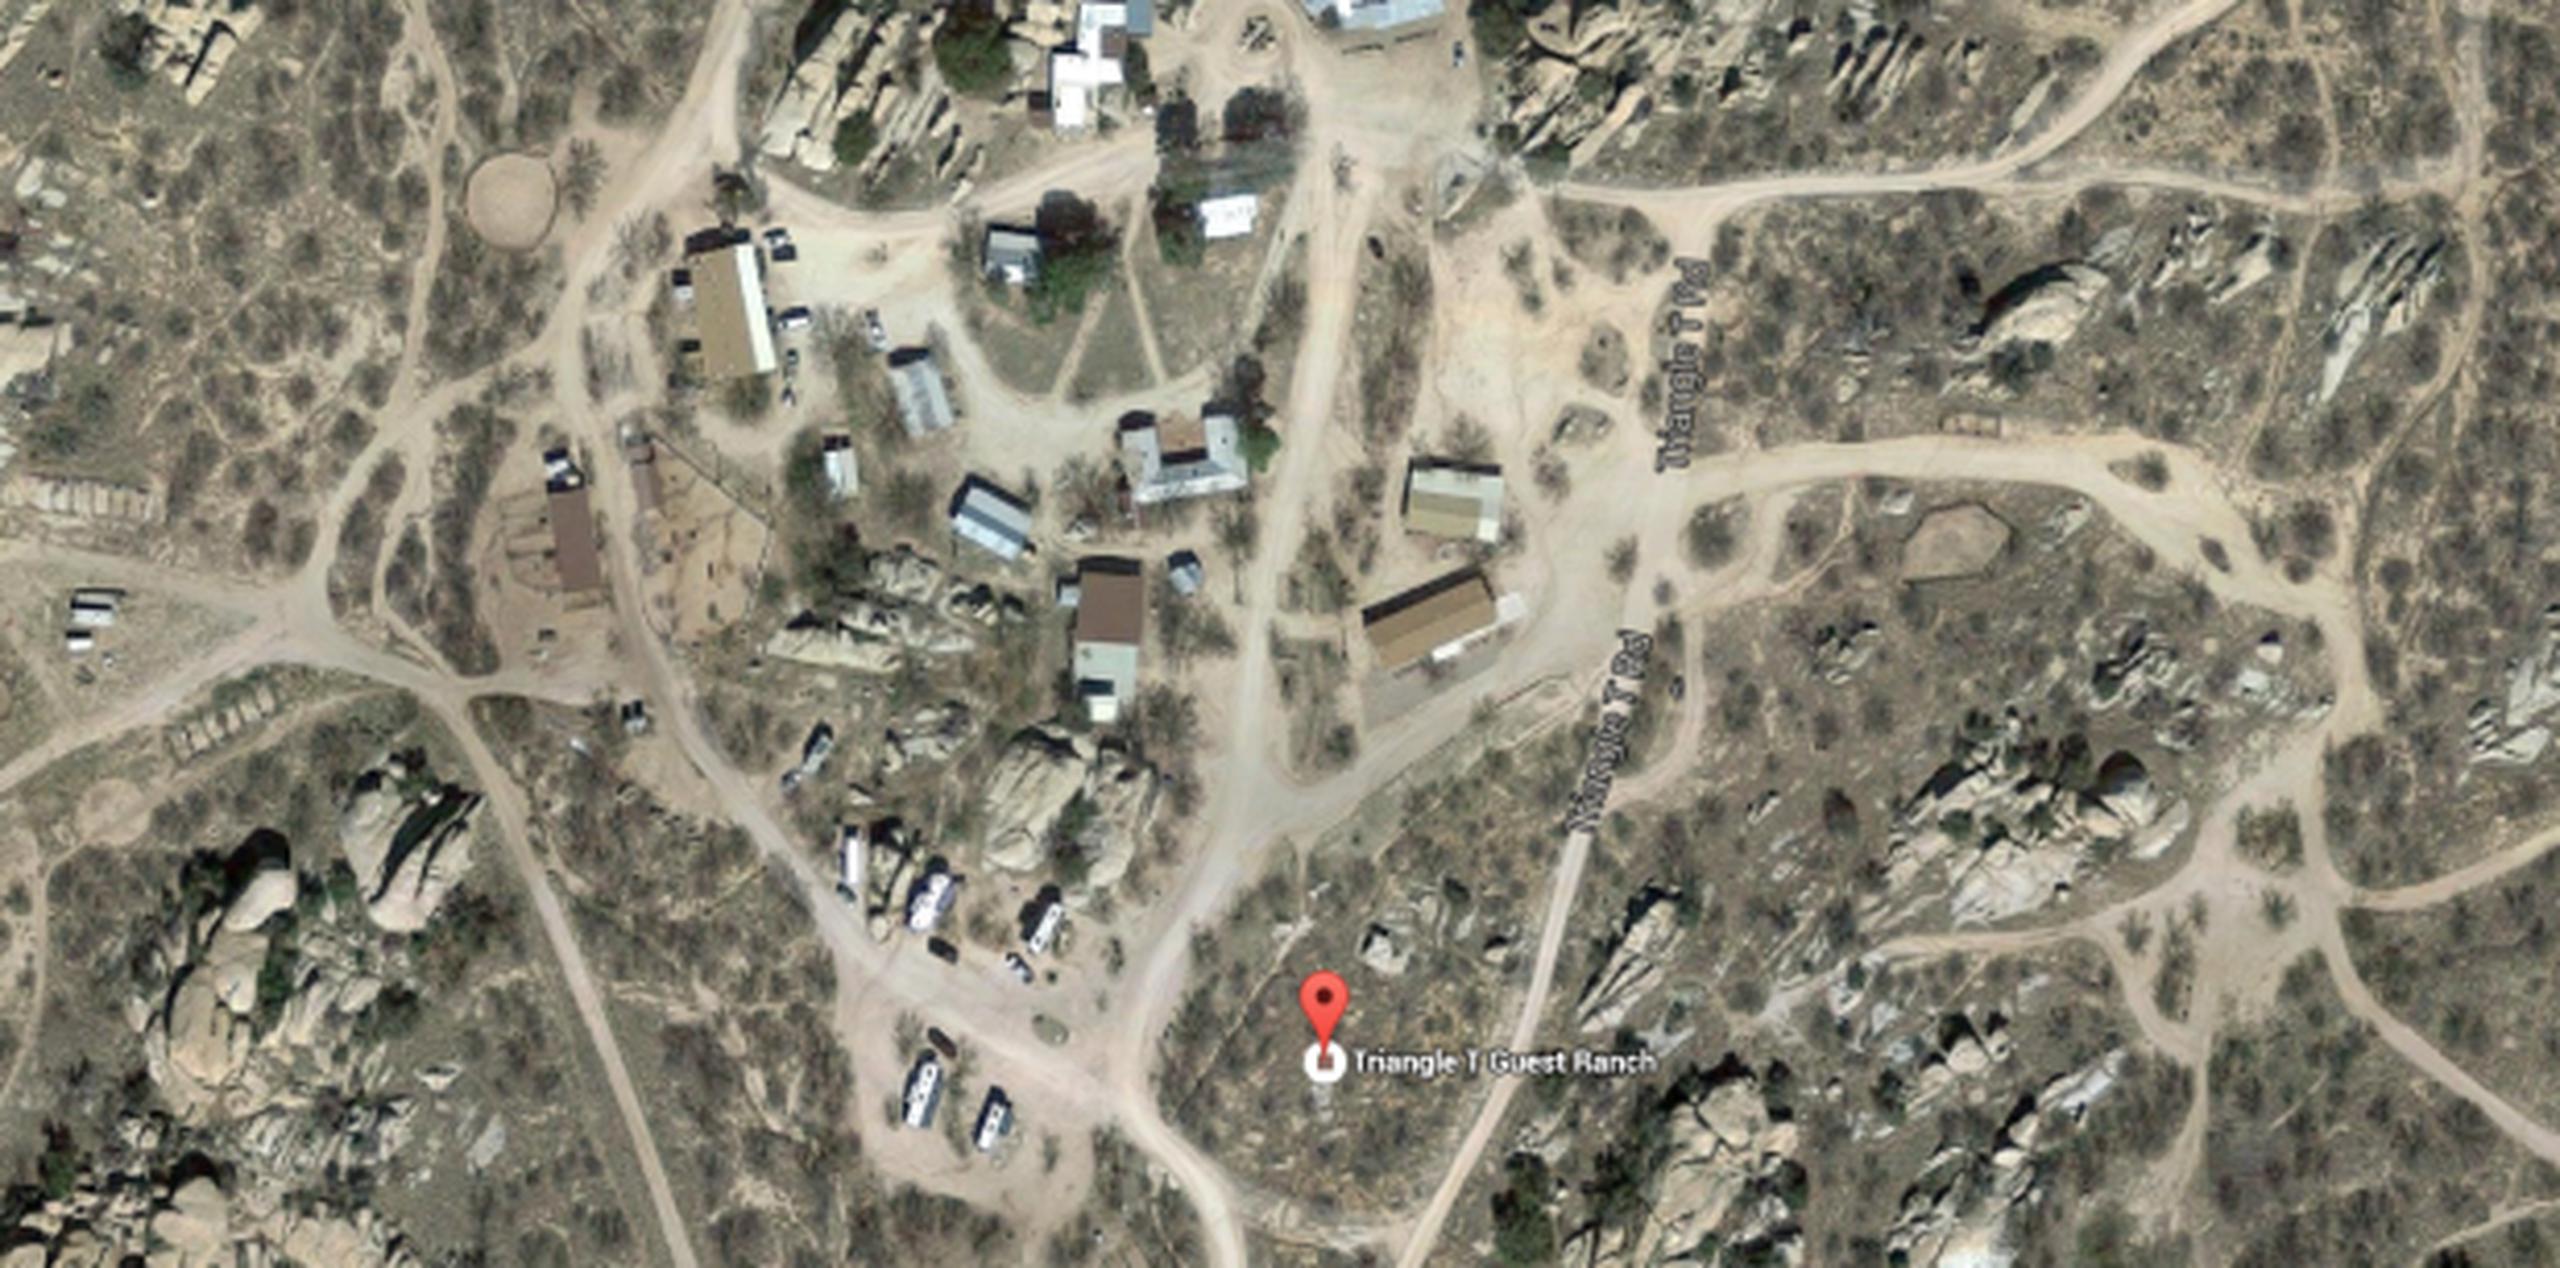 El rancho Triangle T de Dragoon reportó la aparición de un posible cadáver en un camino el sábado por la mañana. (Google Maps)